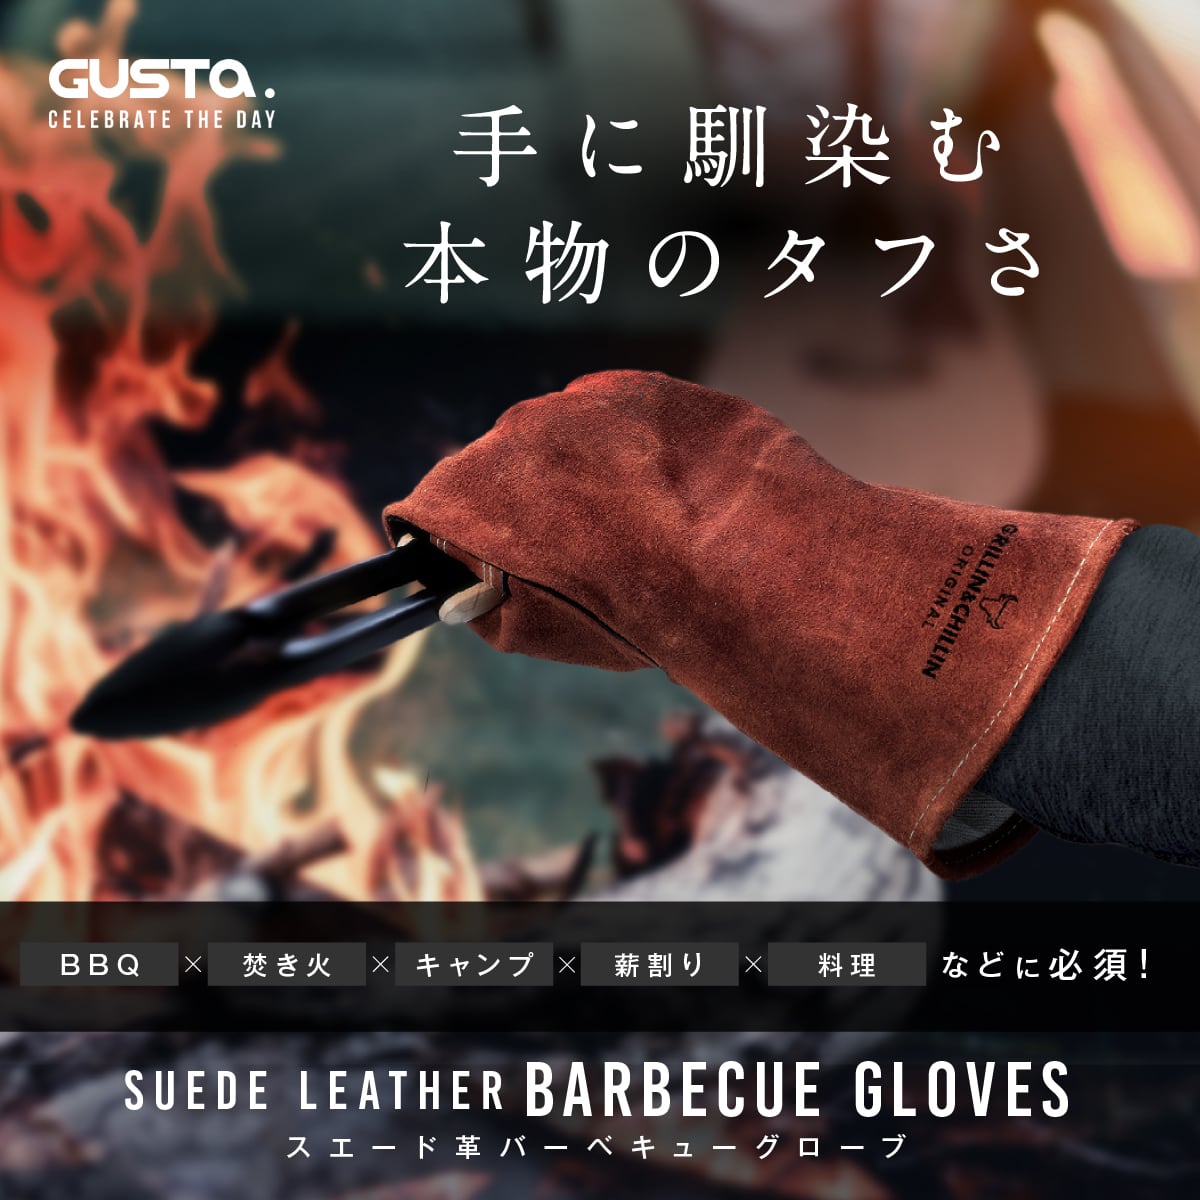 BBQ スエードグローブ 両手用 | GUSTA JAPAN